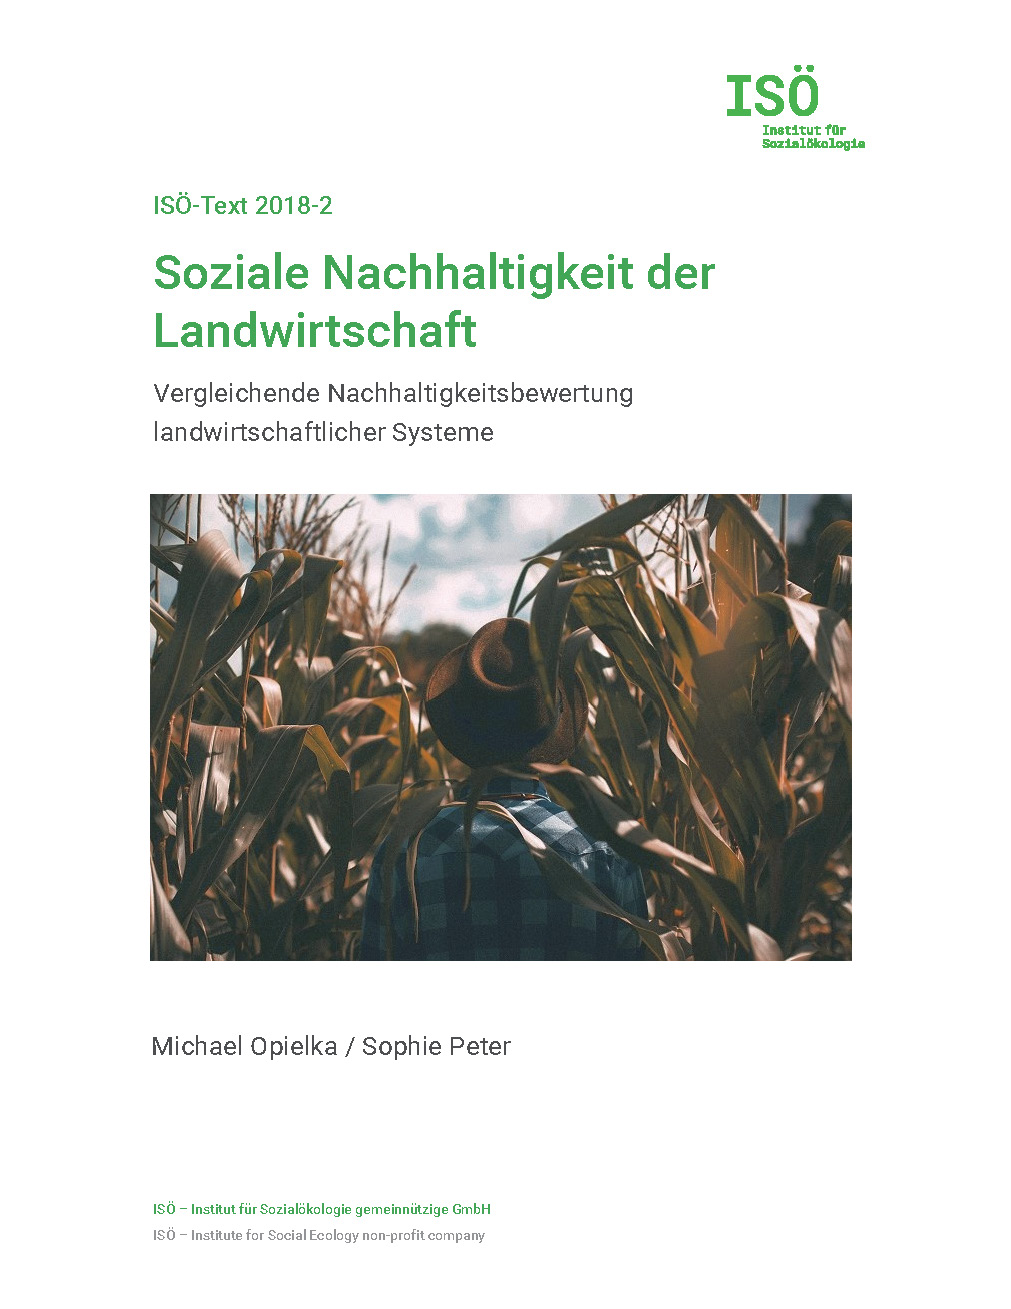 Michael Opielka/Sophie Peter, Soziale Nachhaltigkeit der Landwirtschaft. Vergleichende Nachhaltigkeitsbewertung landwirtschaftlicher Systeme (ISÖ-Text 2018-2) 